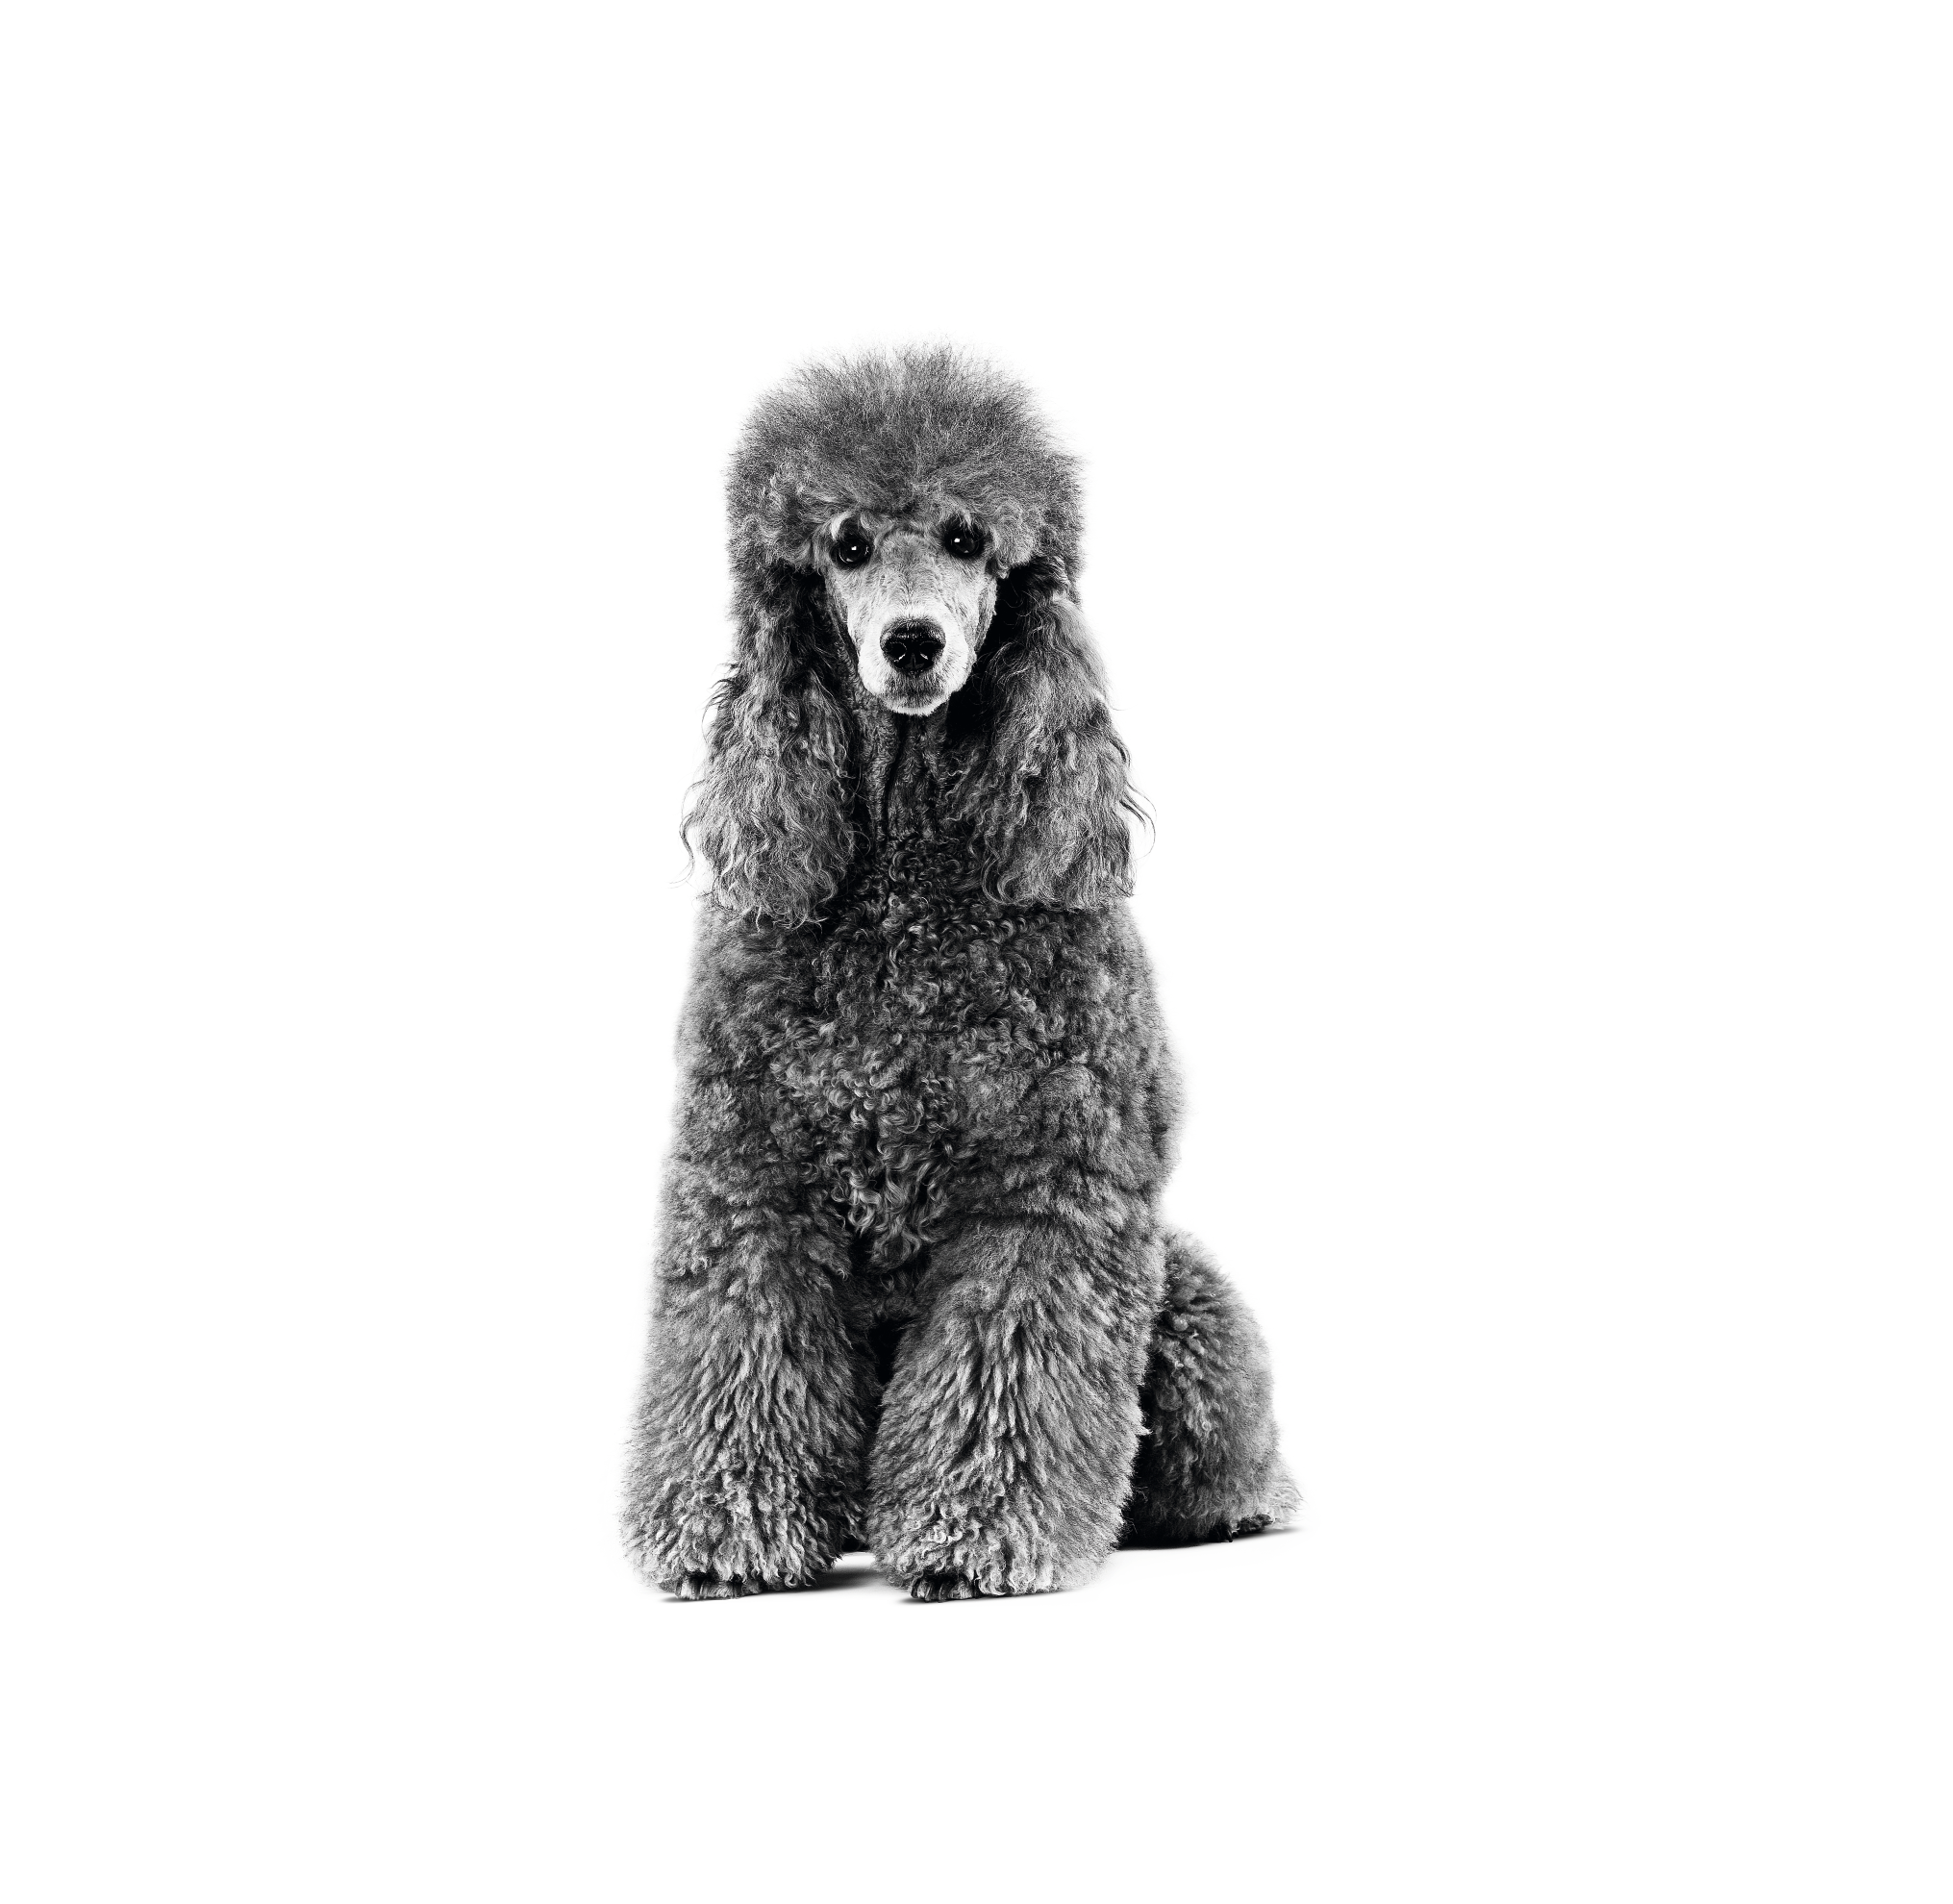 Anjing Poodle dewasa dalam warna hitam putih